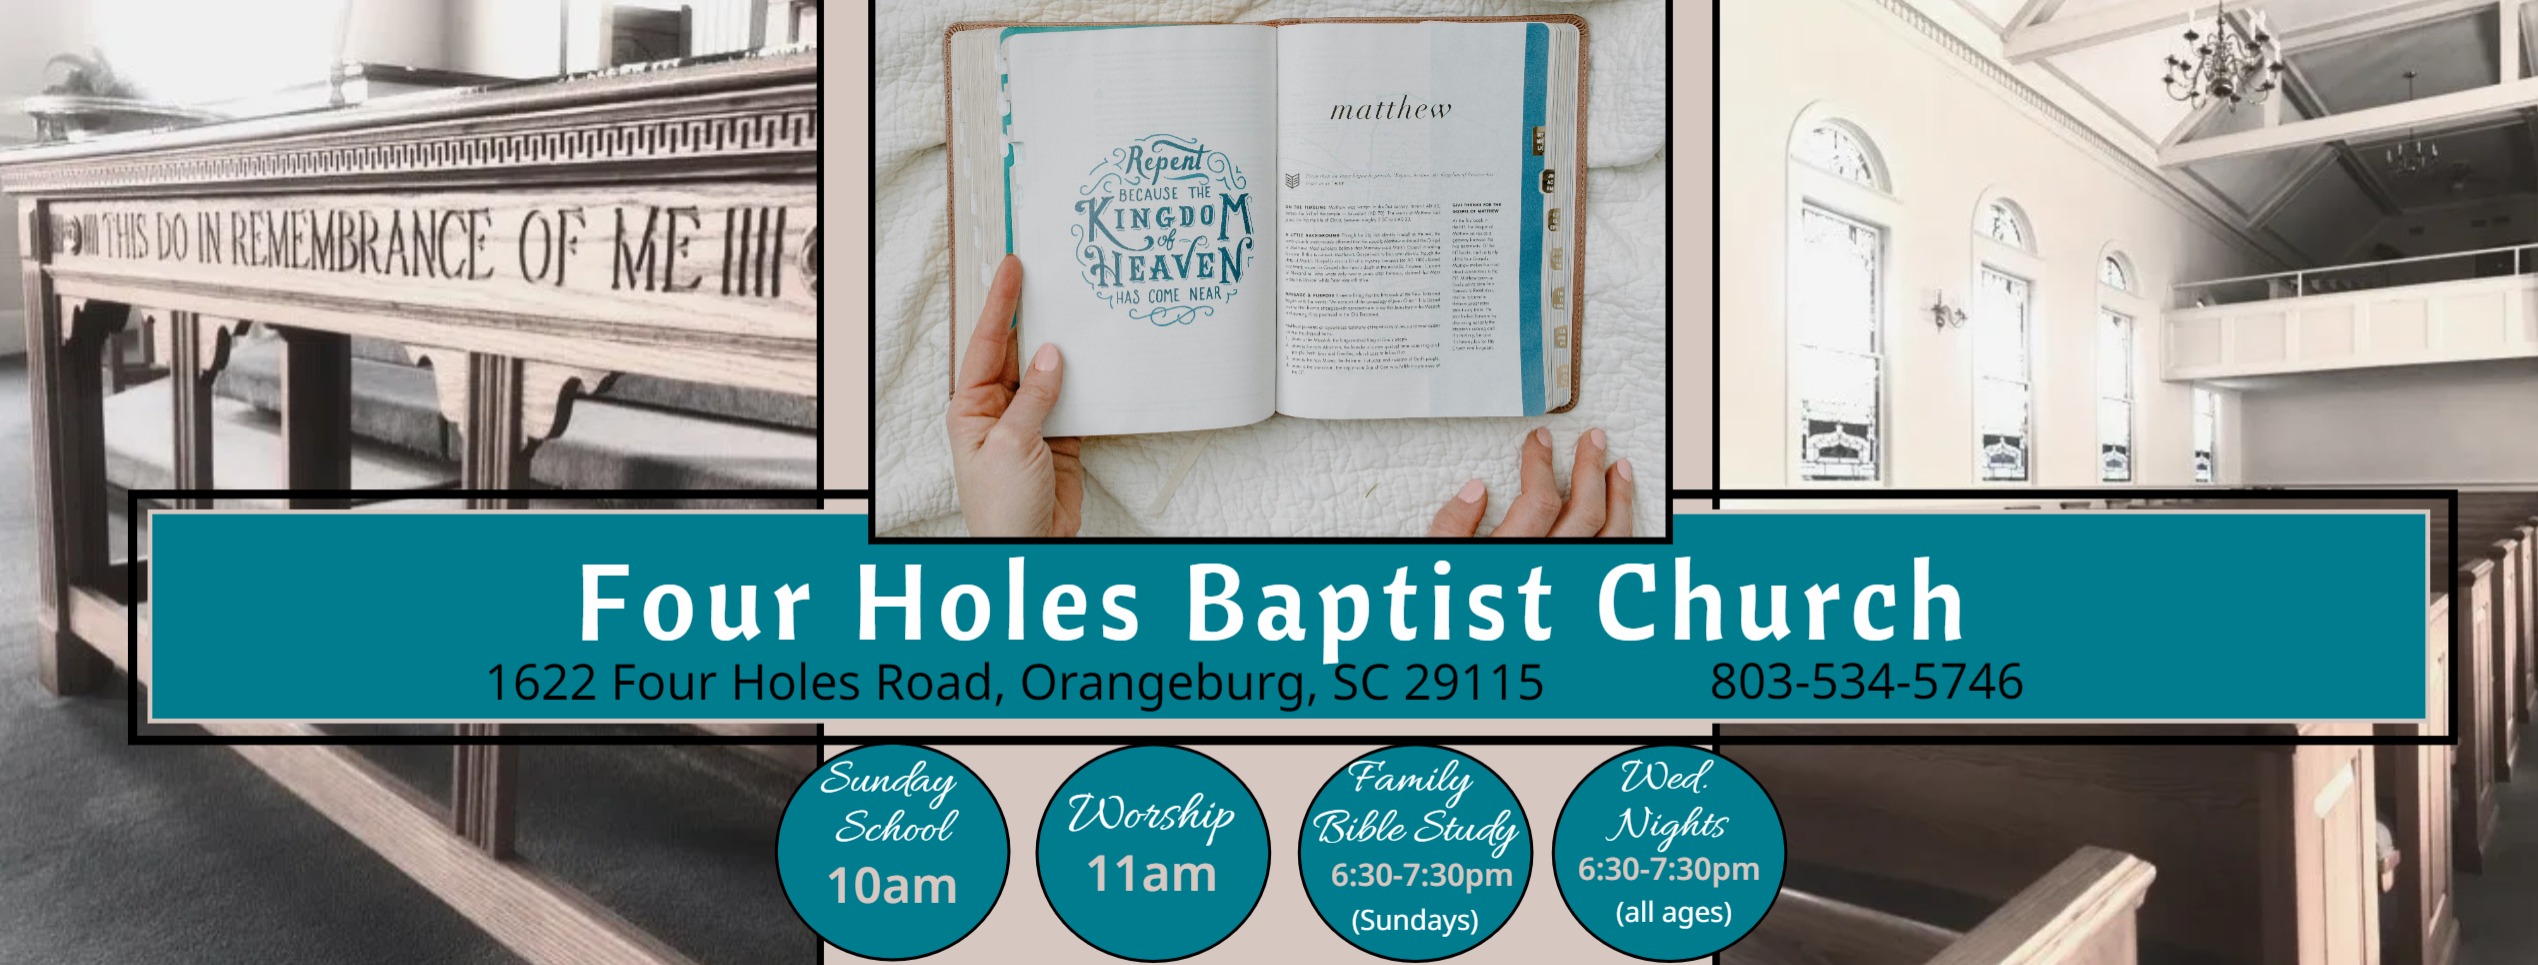 Four Holes Baptist Church